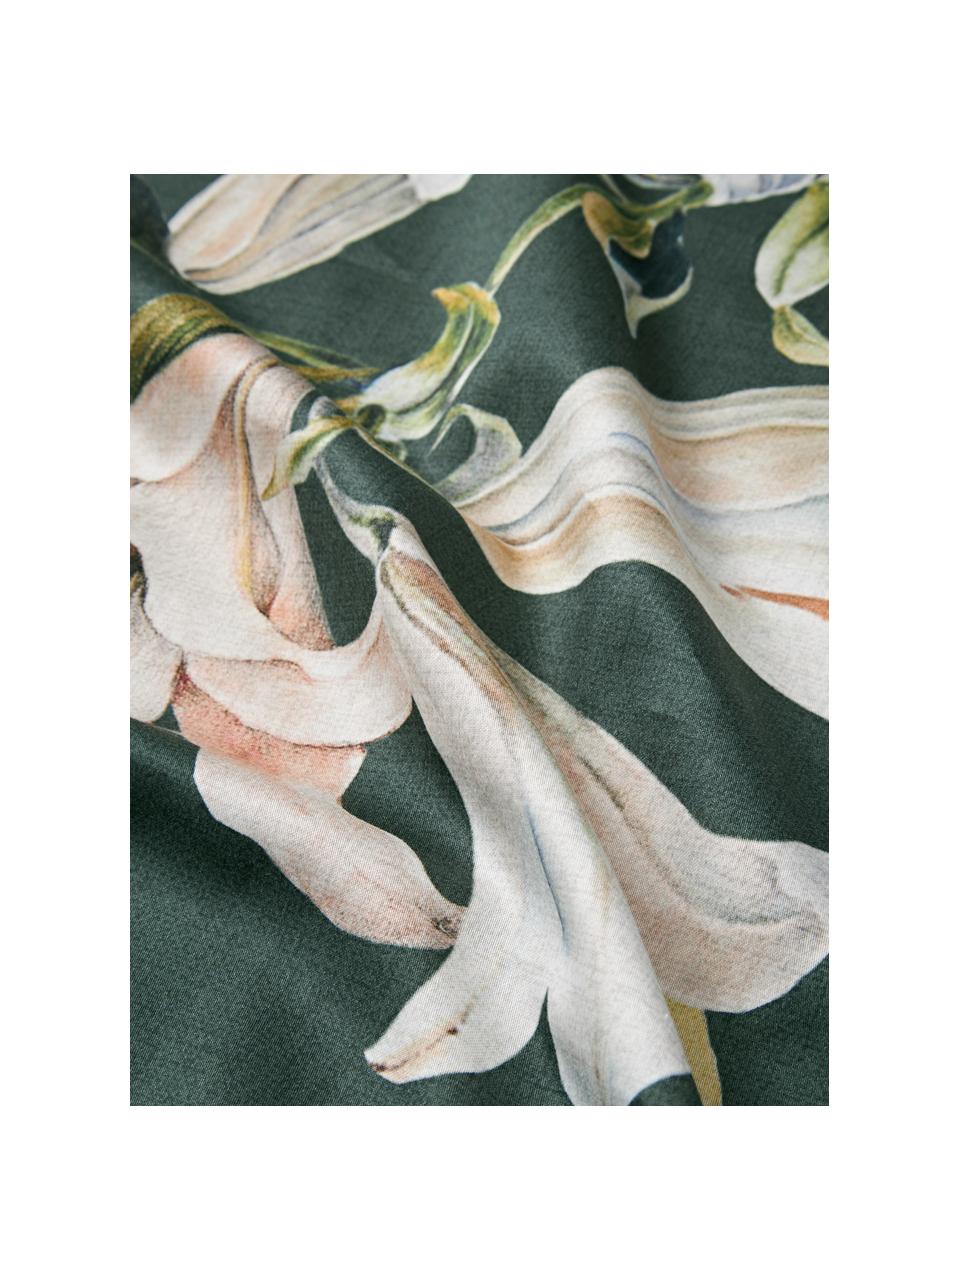 Copripiumino in raso di cotone con motivo floreale Fori, Tessuto: raso Densità dei fili 210, Verde scuro, multicolore, Larg. 200 x Lung. 200 cm